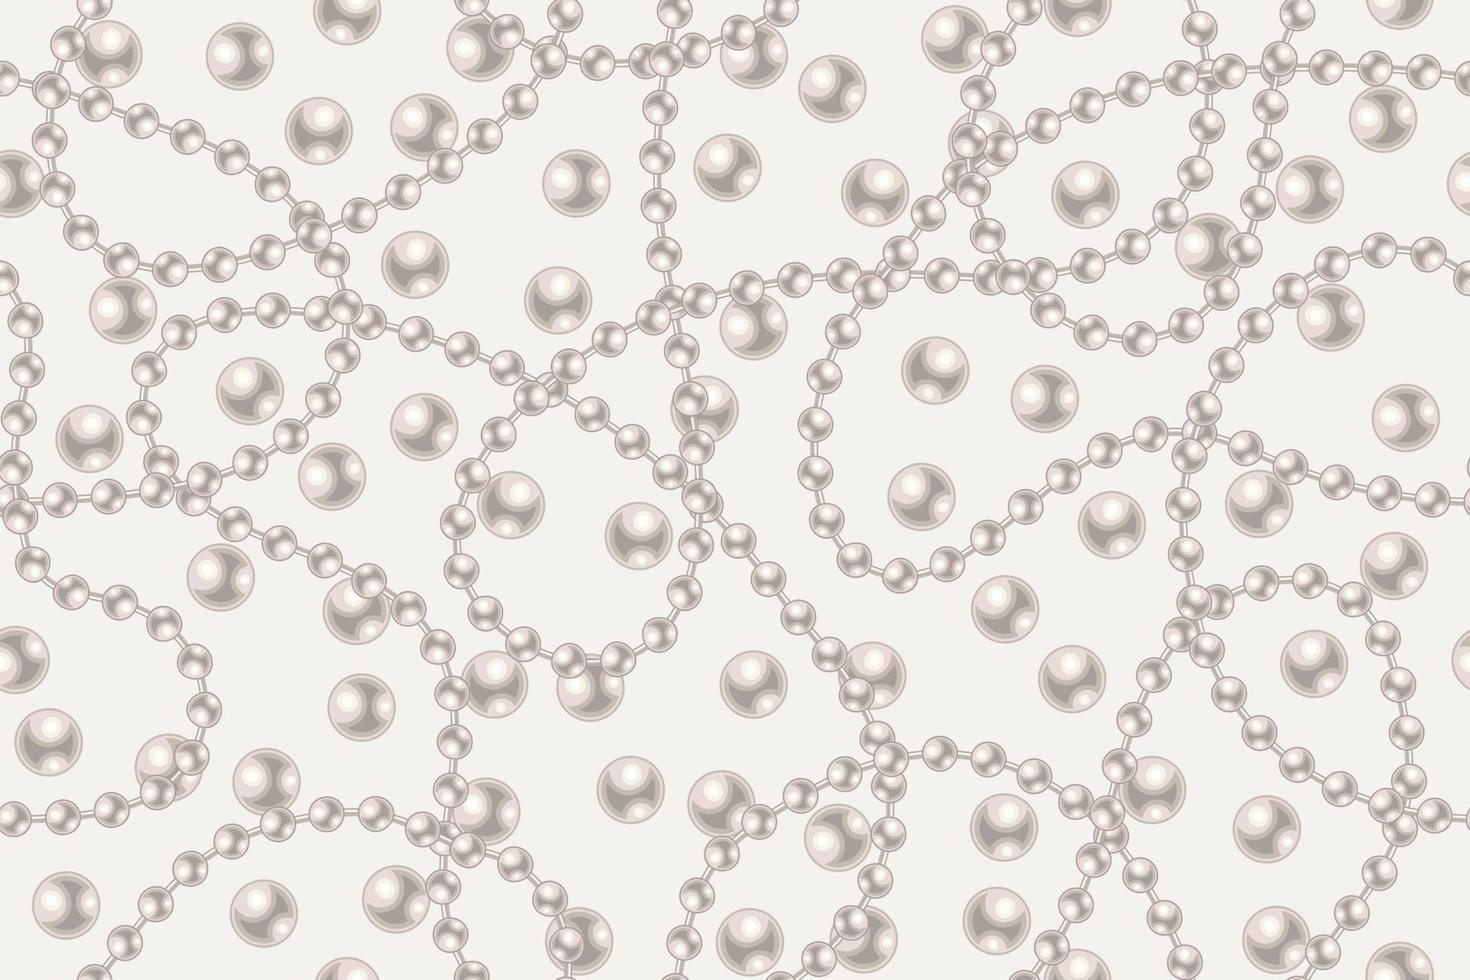 patrón impecable con grandes perlas blancas, hilos de perlas sobre fondo claro. líneas onduladas, color pastel clásico de perlas. ilustración vectorial vector